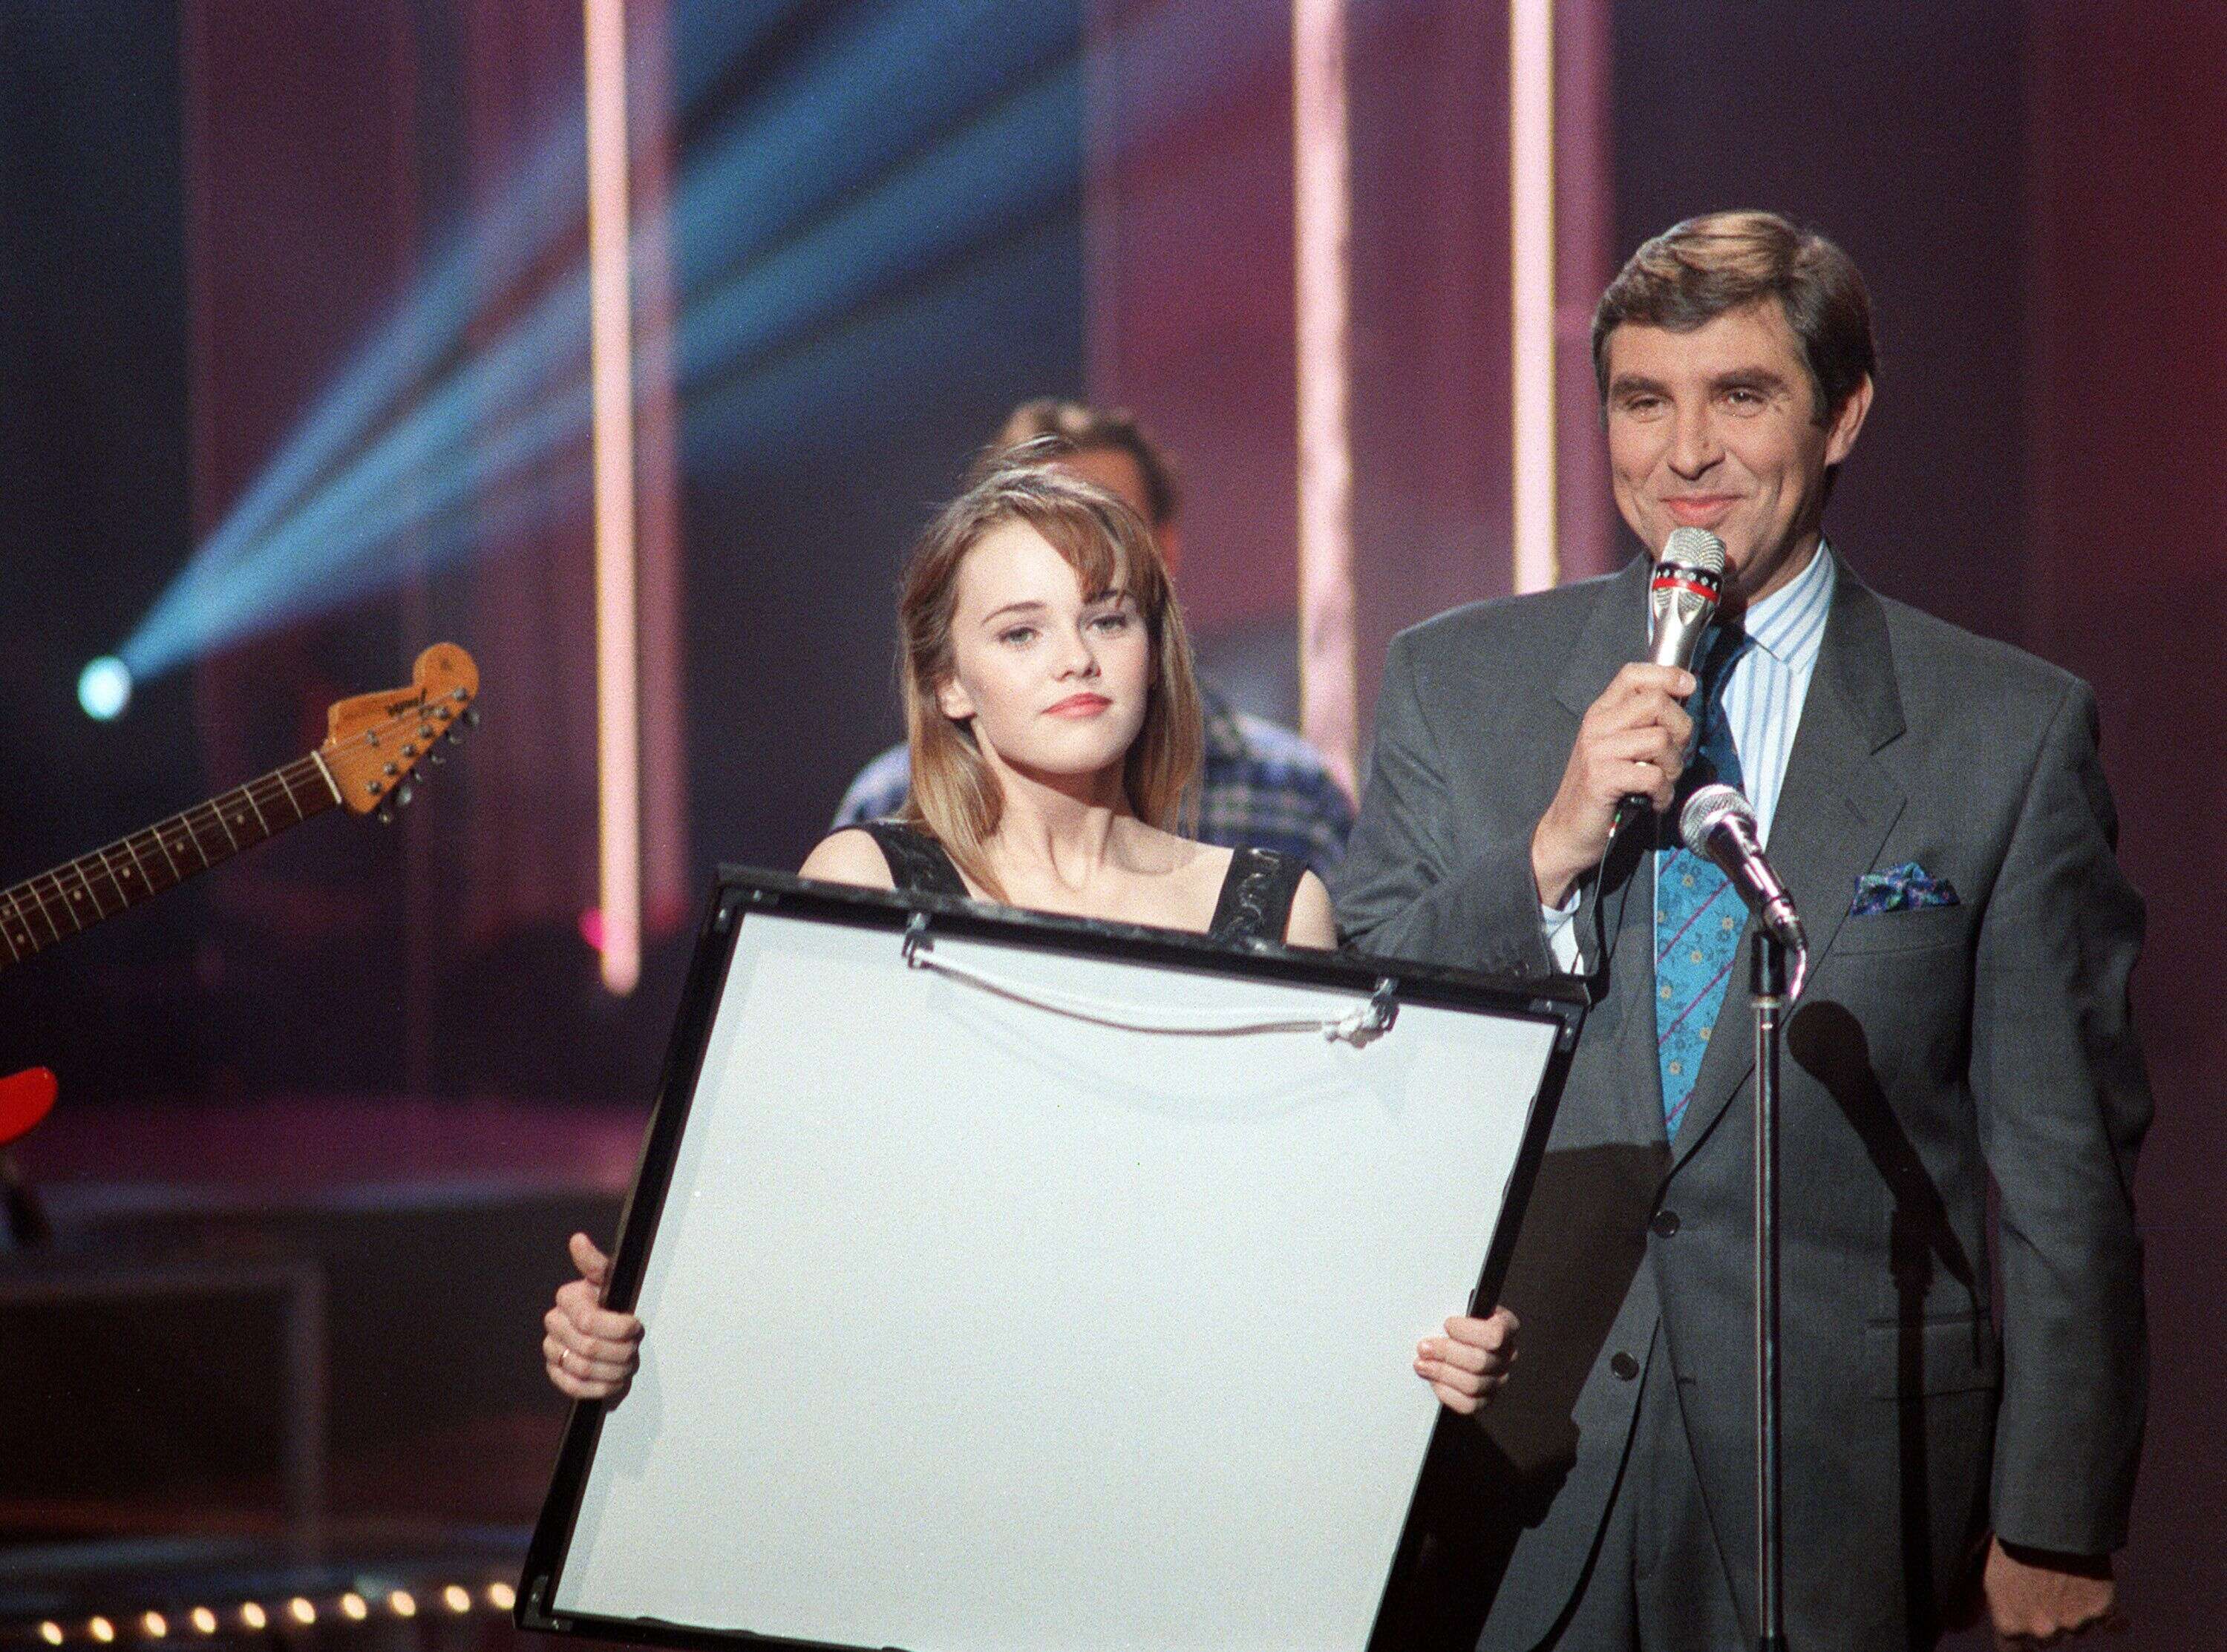 Le présentateur de télévision Jean-Pierre Foucault reçoit la chanteuse Vanessa Paradis, âgée de 16 ans, le 23 novembre 1988 à Paris lors de son émission 